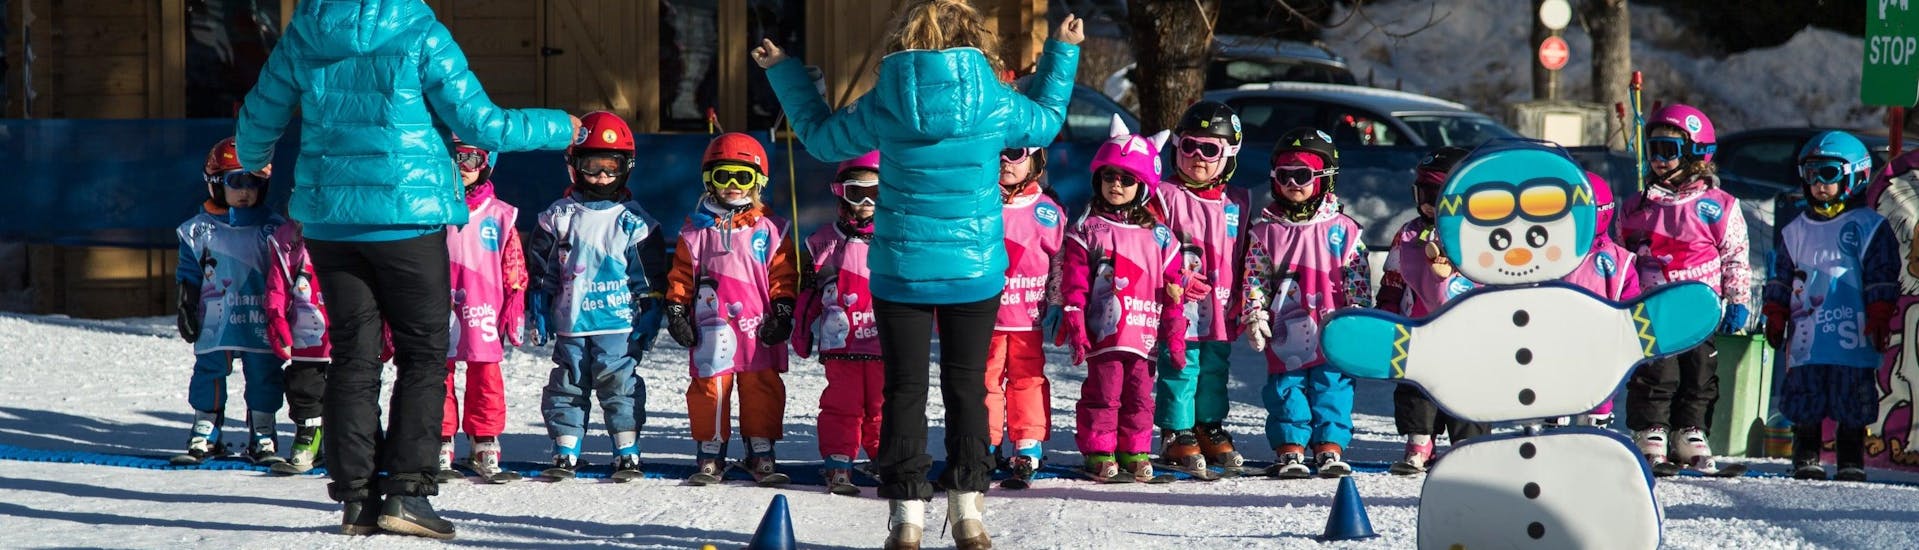 Skilessen voor kinderen vanaf 5 jaar - beginners.